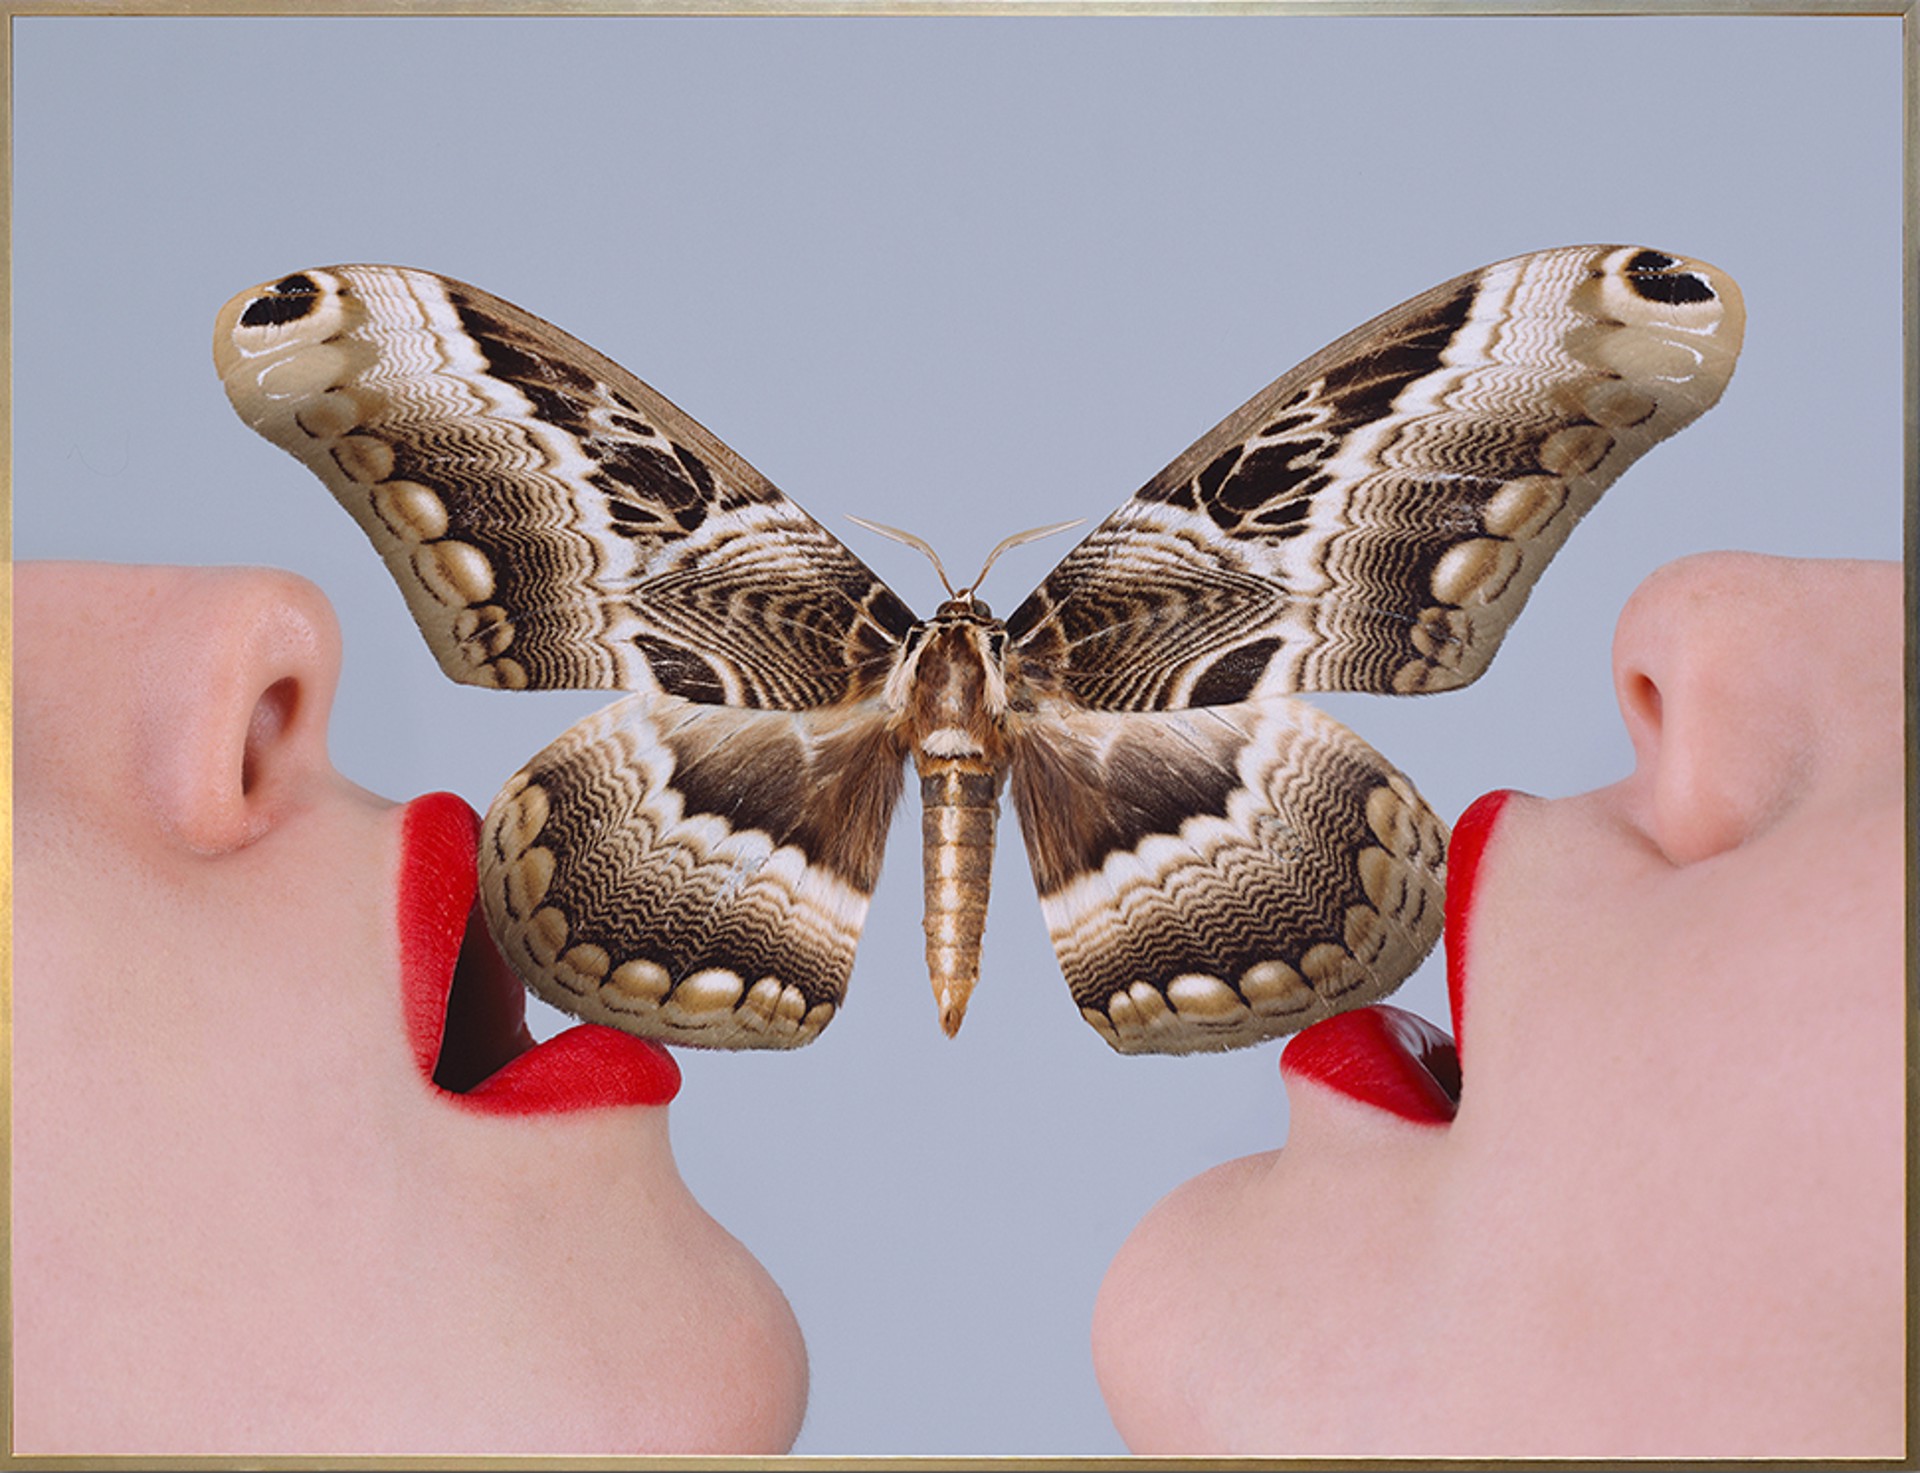 Butterfly by Tyler Shields